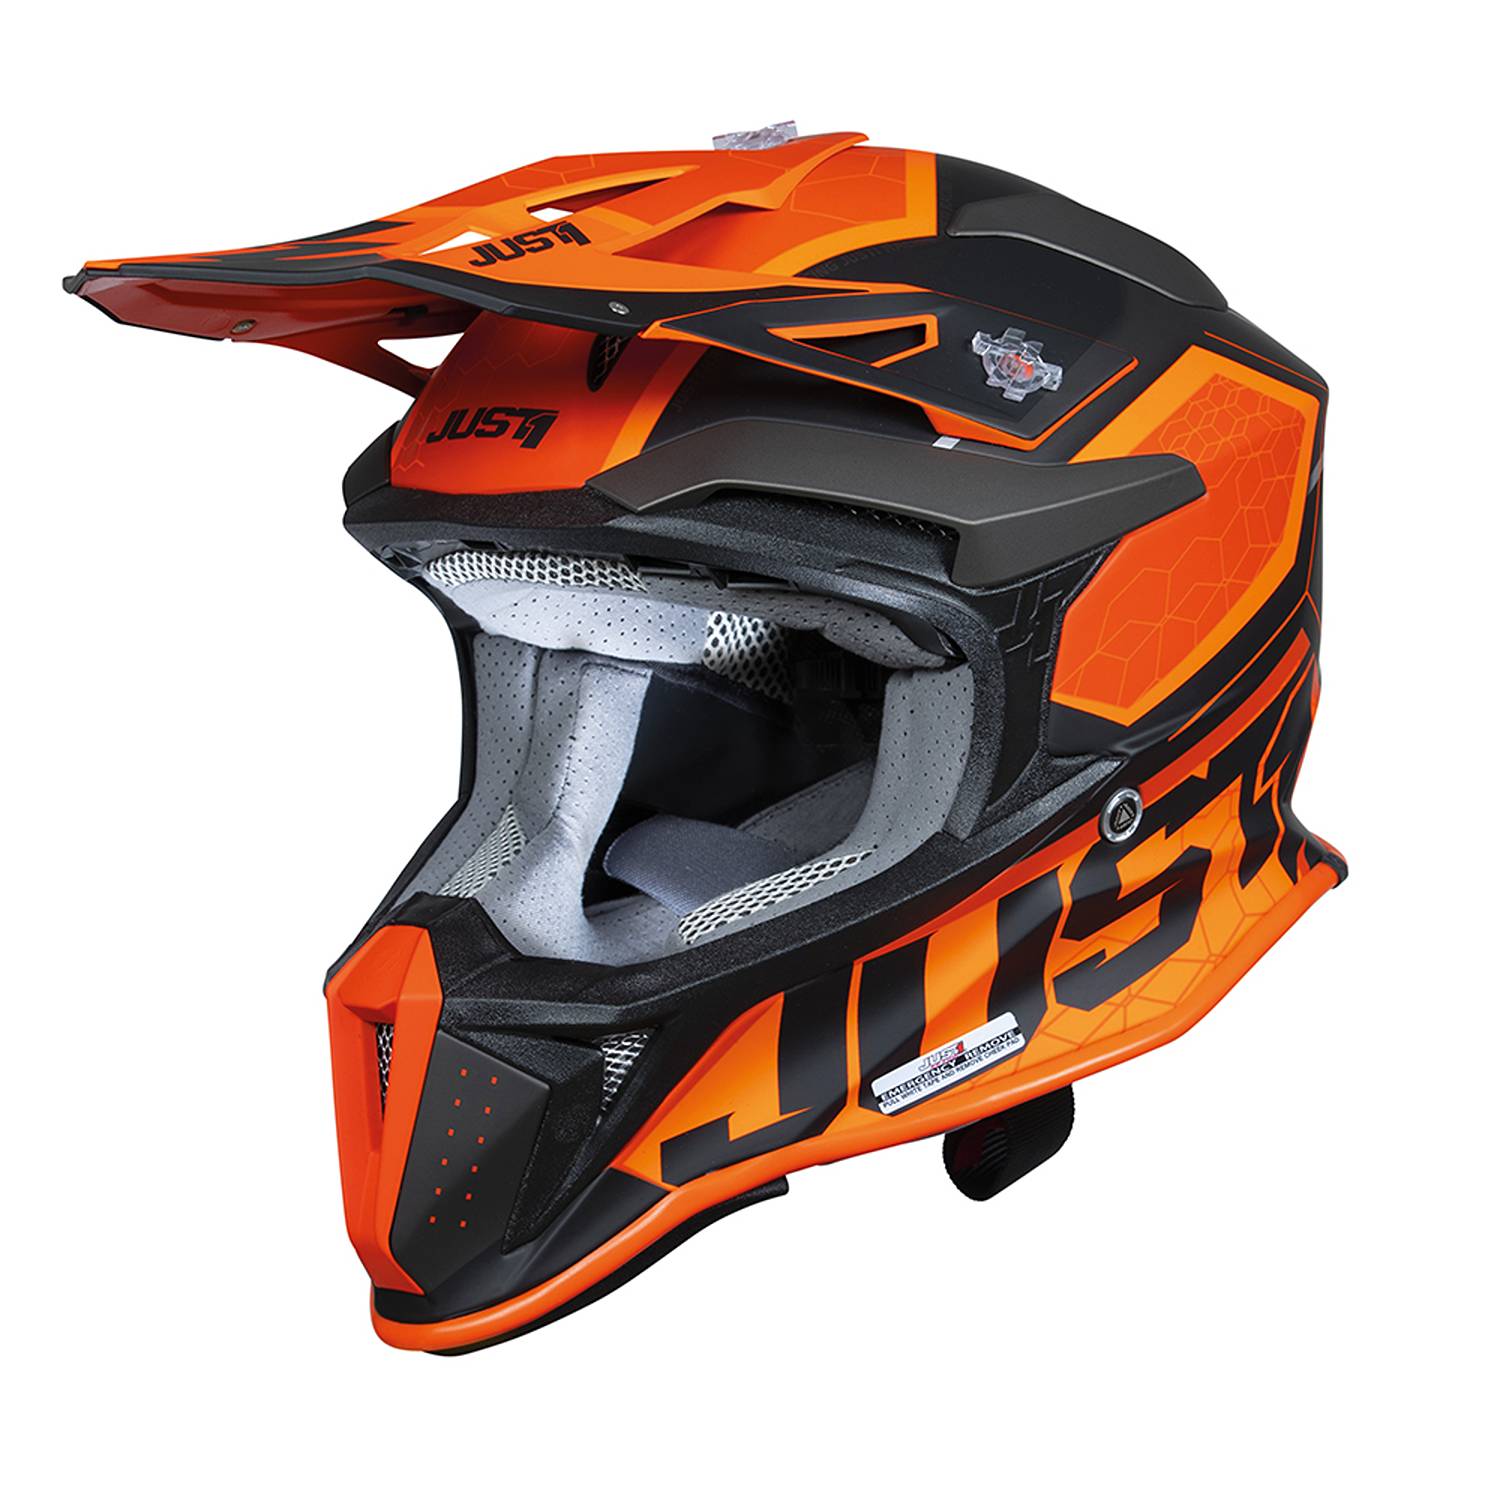 Image of Just1 J18-F Hexa Orange Black Matt Offroad Helmet Size M ID 8055774027342